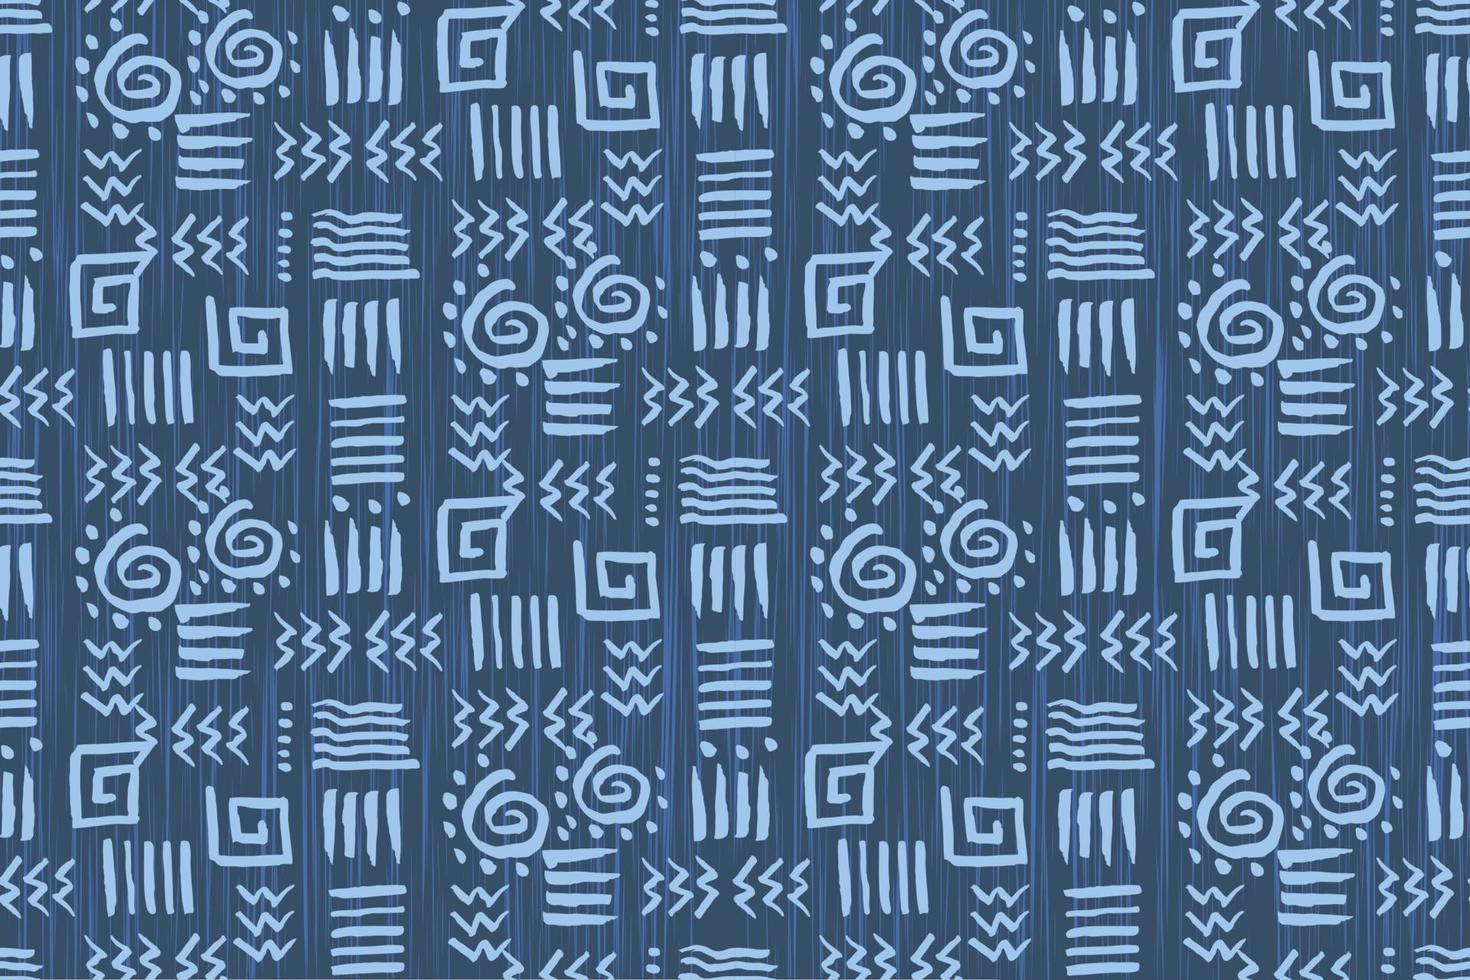 Afrikaanse wax print stof, etnische handgemaakte sieraad voor uw ontwerp, tribal patroon motieven geometrische elementen. vector textuur, afro textiel ankara fashion stijl. pareo wikkeljurk, tapijt batik